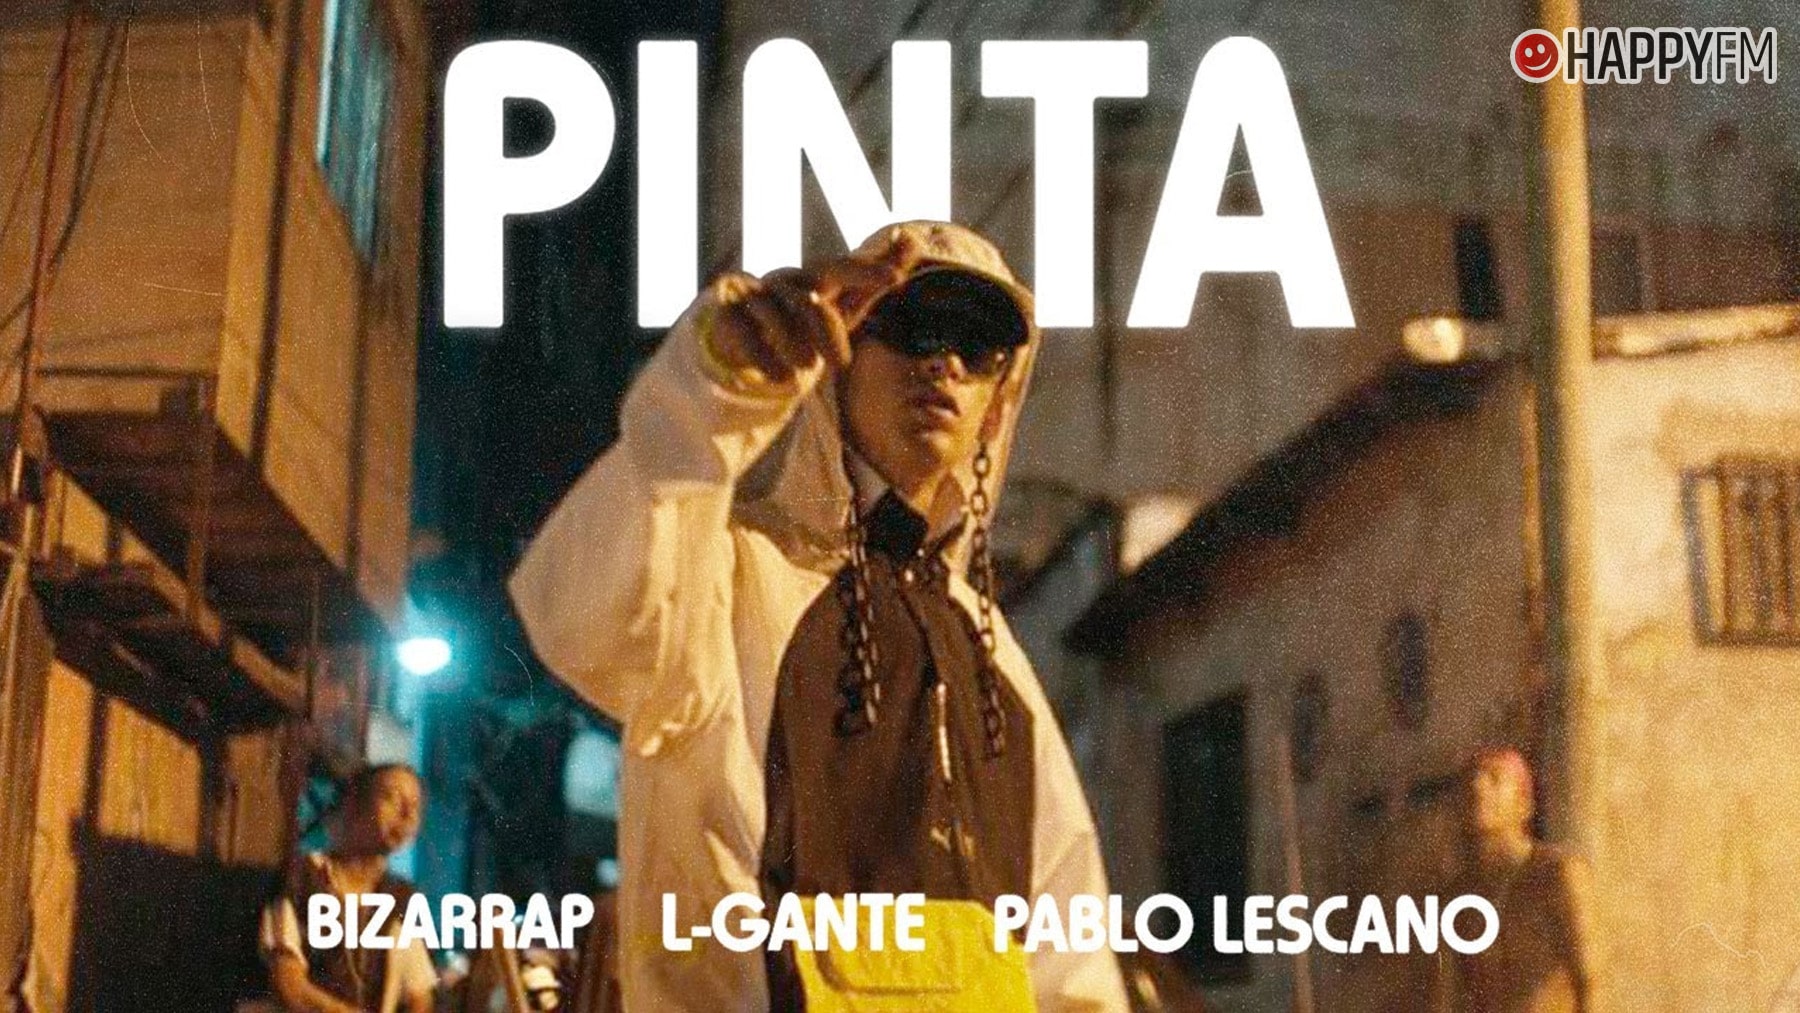 ‘Pinta’, de Bizarrap, L-Gante y Pablo Lescano: letra y vídeo